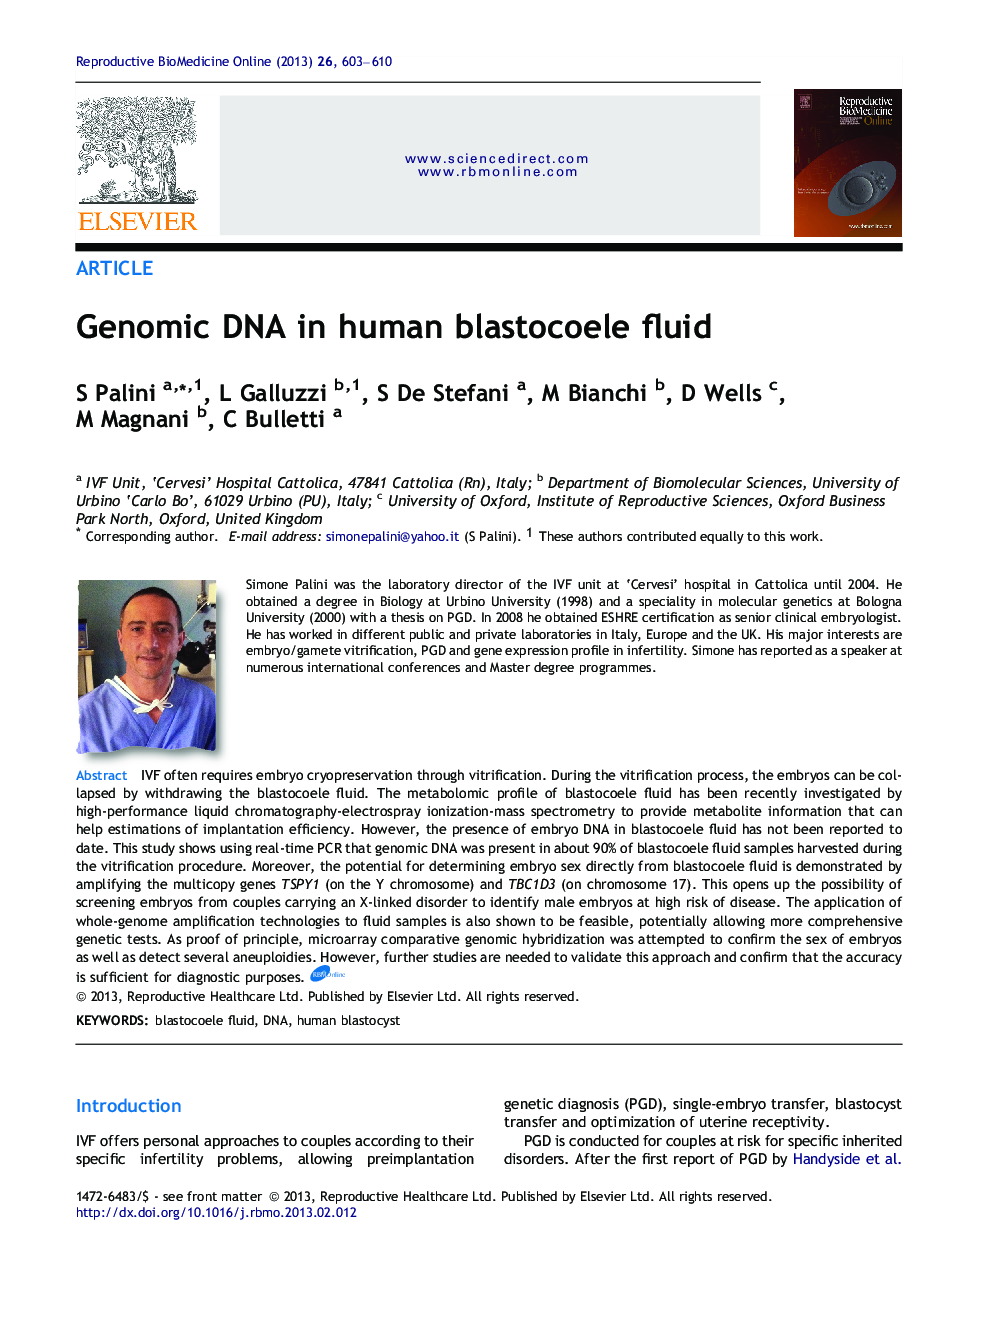 Genomic DNA in human blastocoele fluid